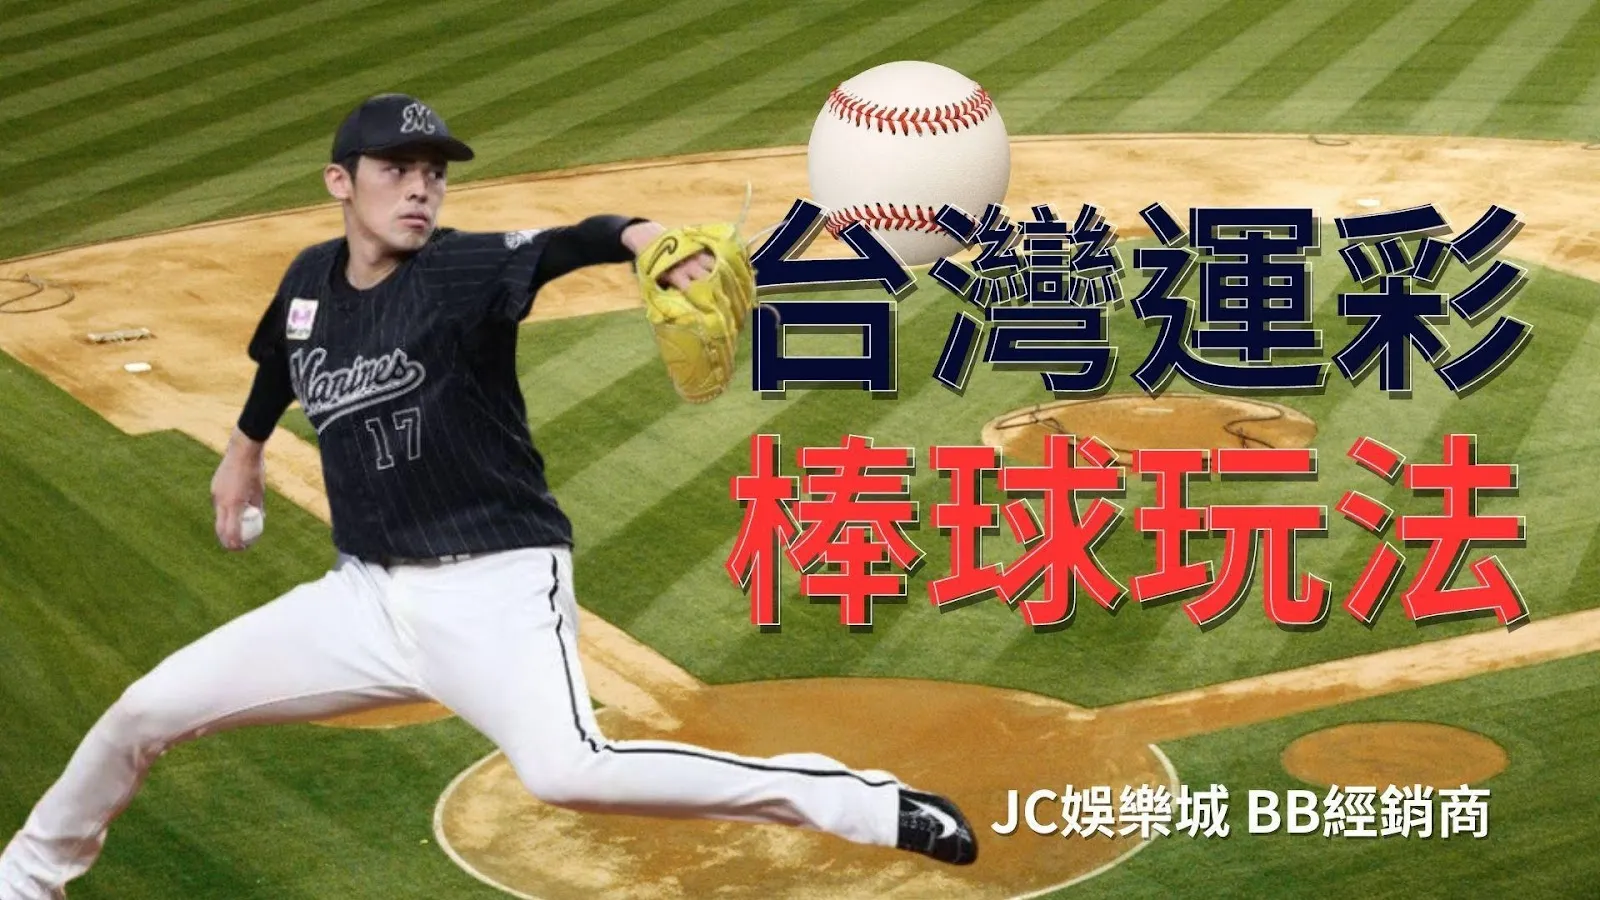 【台灣運彩棒球玩法】運彩經典賽串關玩，不小心賺太多